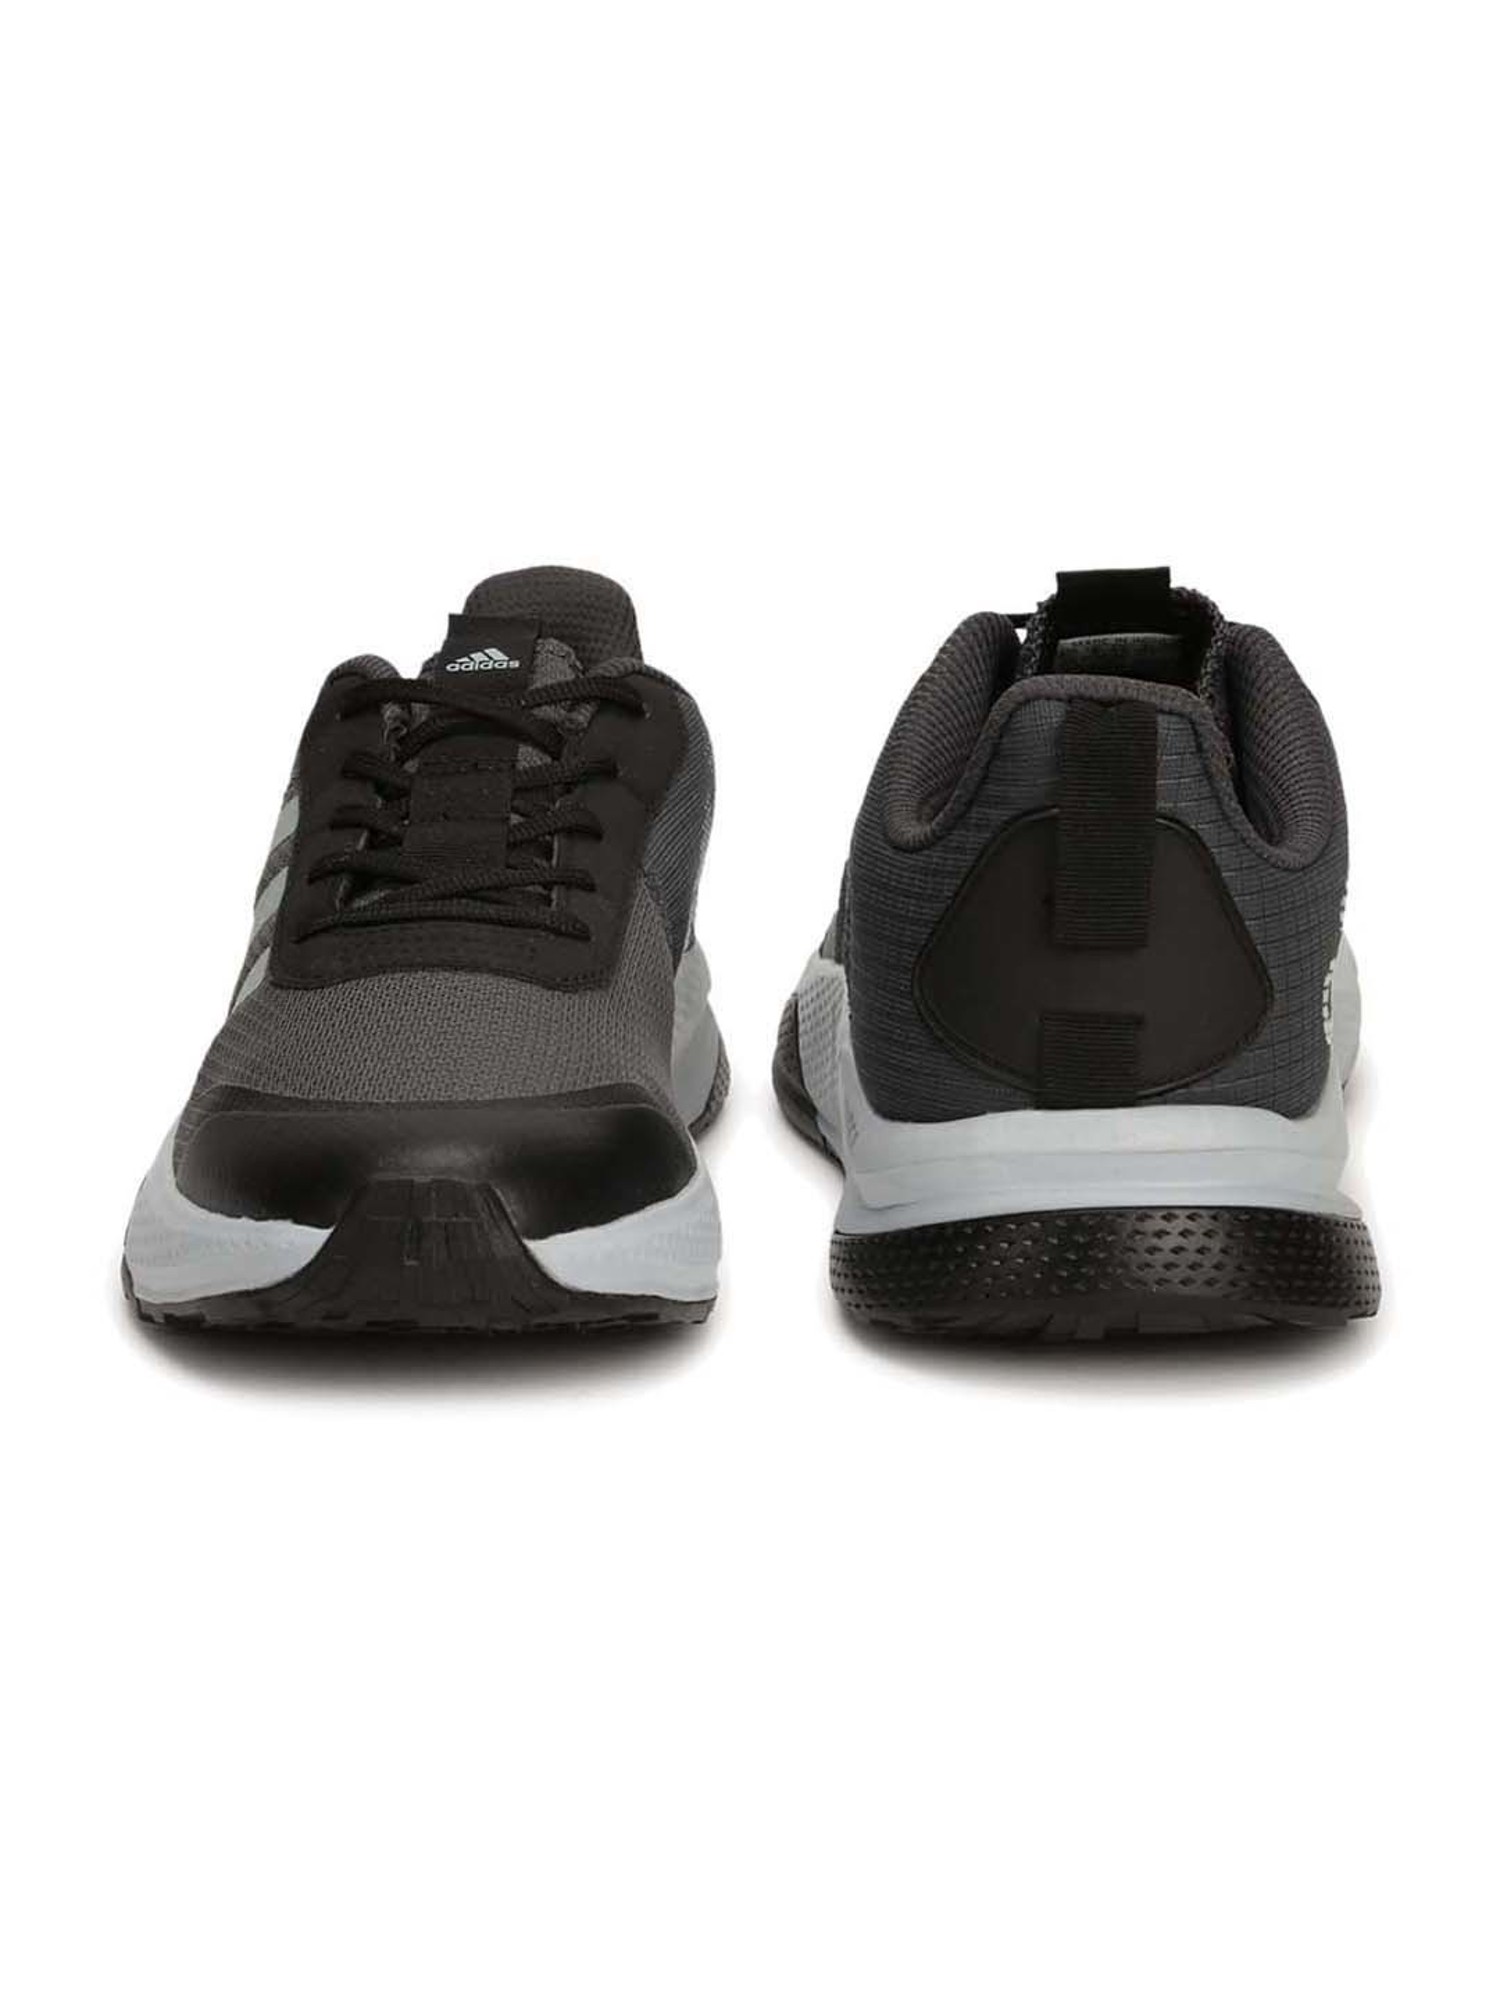 Buy nike air pegasus 89 price Adidas Men's SupaBeam Grey Running Shoes for Men at Best Price